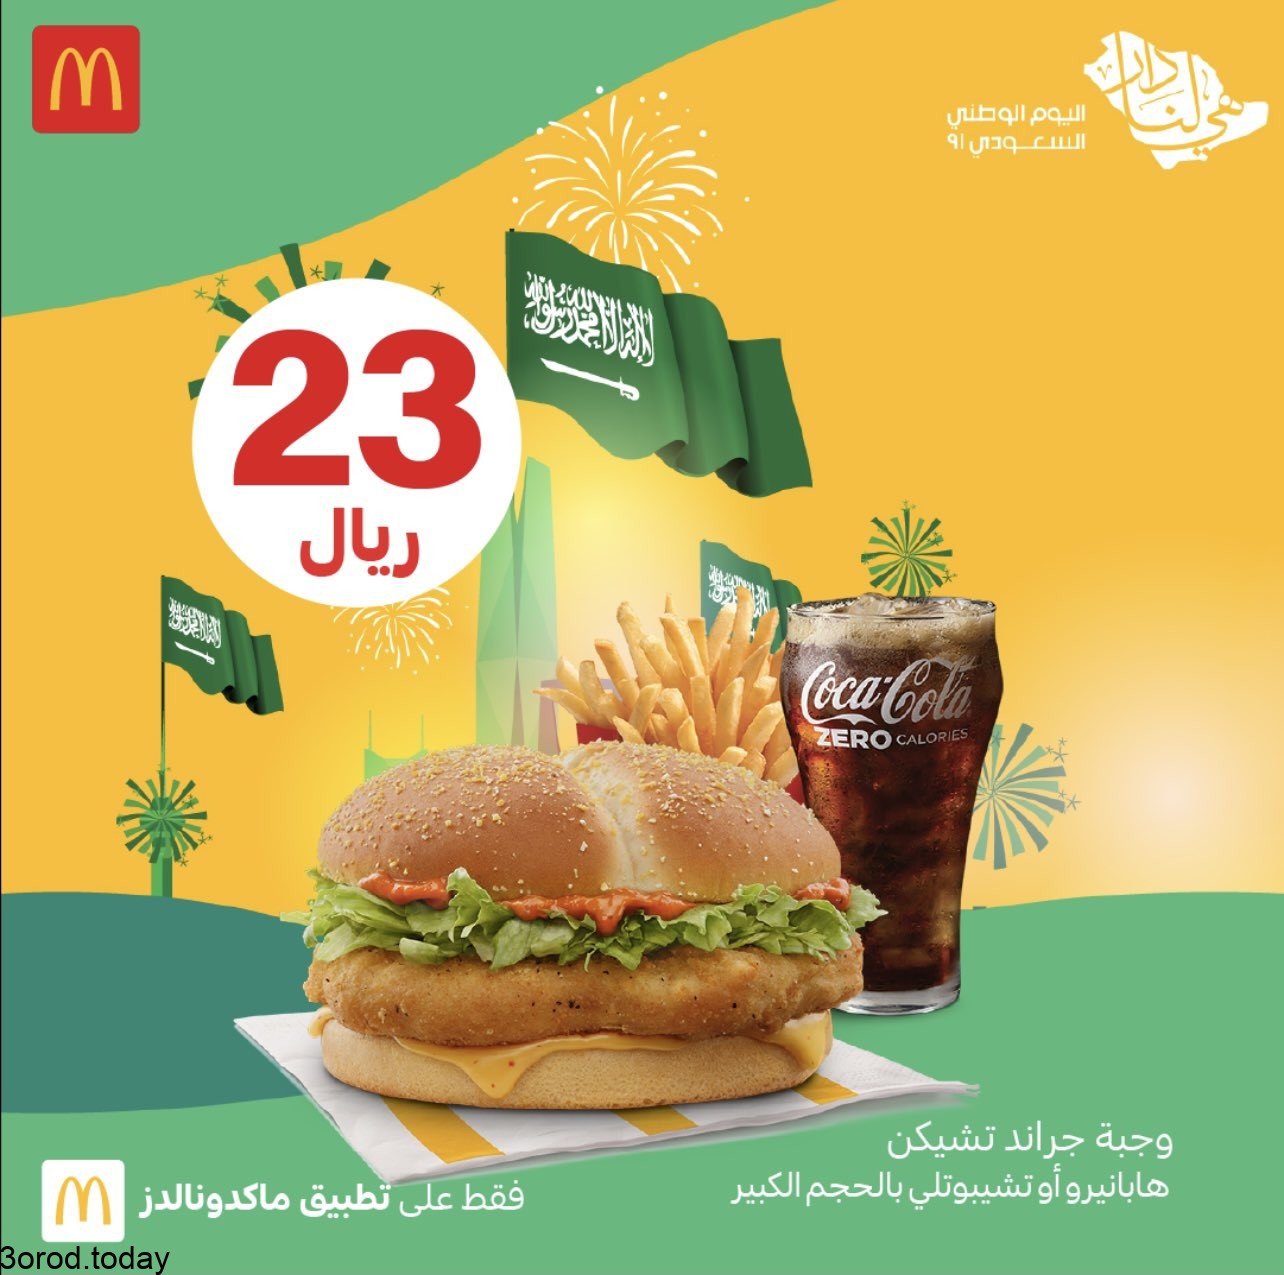 E 6XZQ VgAcUHQt 1 - عروض المطاعم : عروض مطعم ماكدونالدز السعودية الغربية و الجنوبية